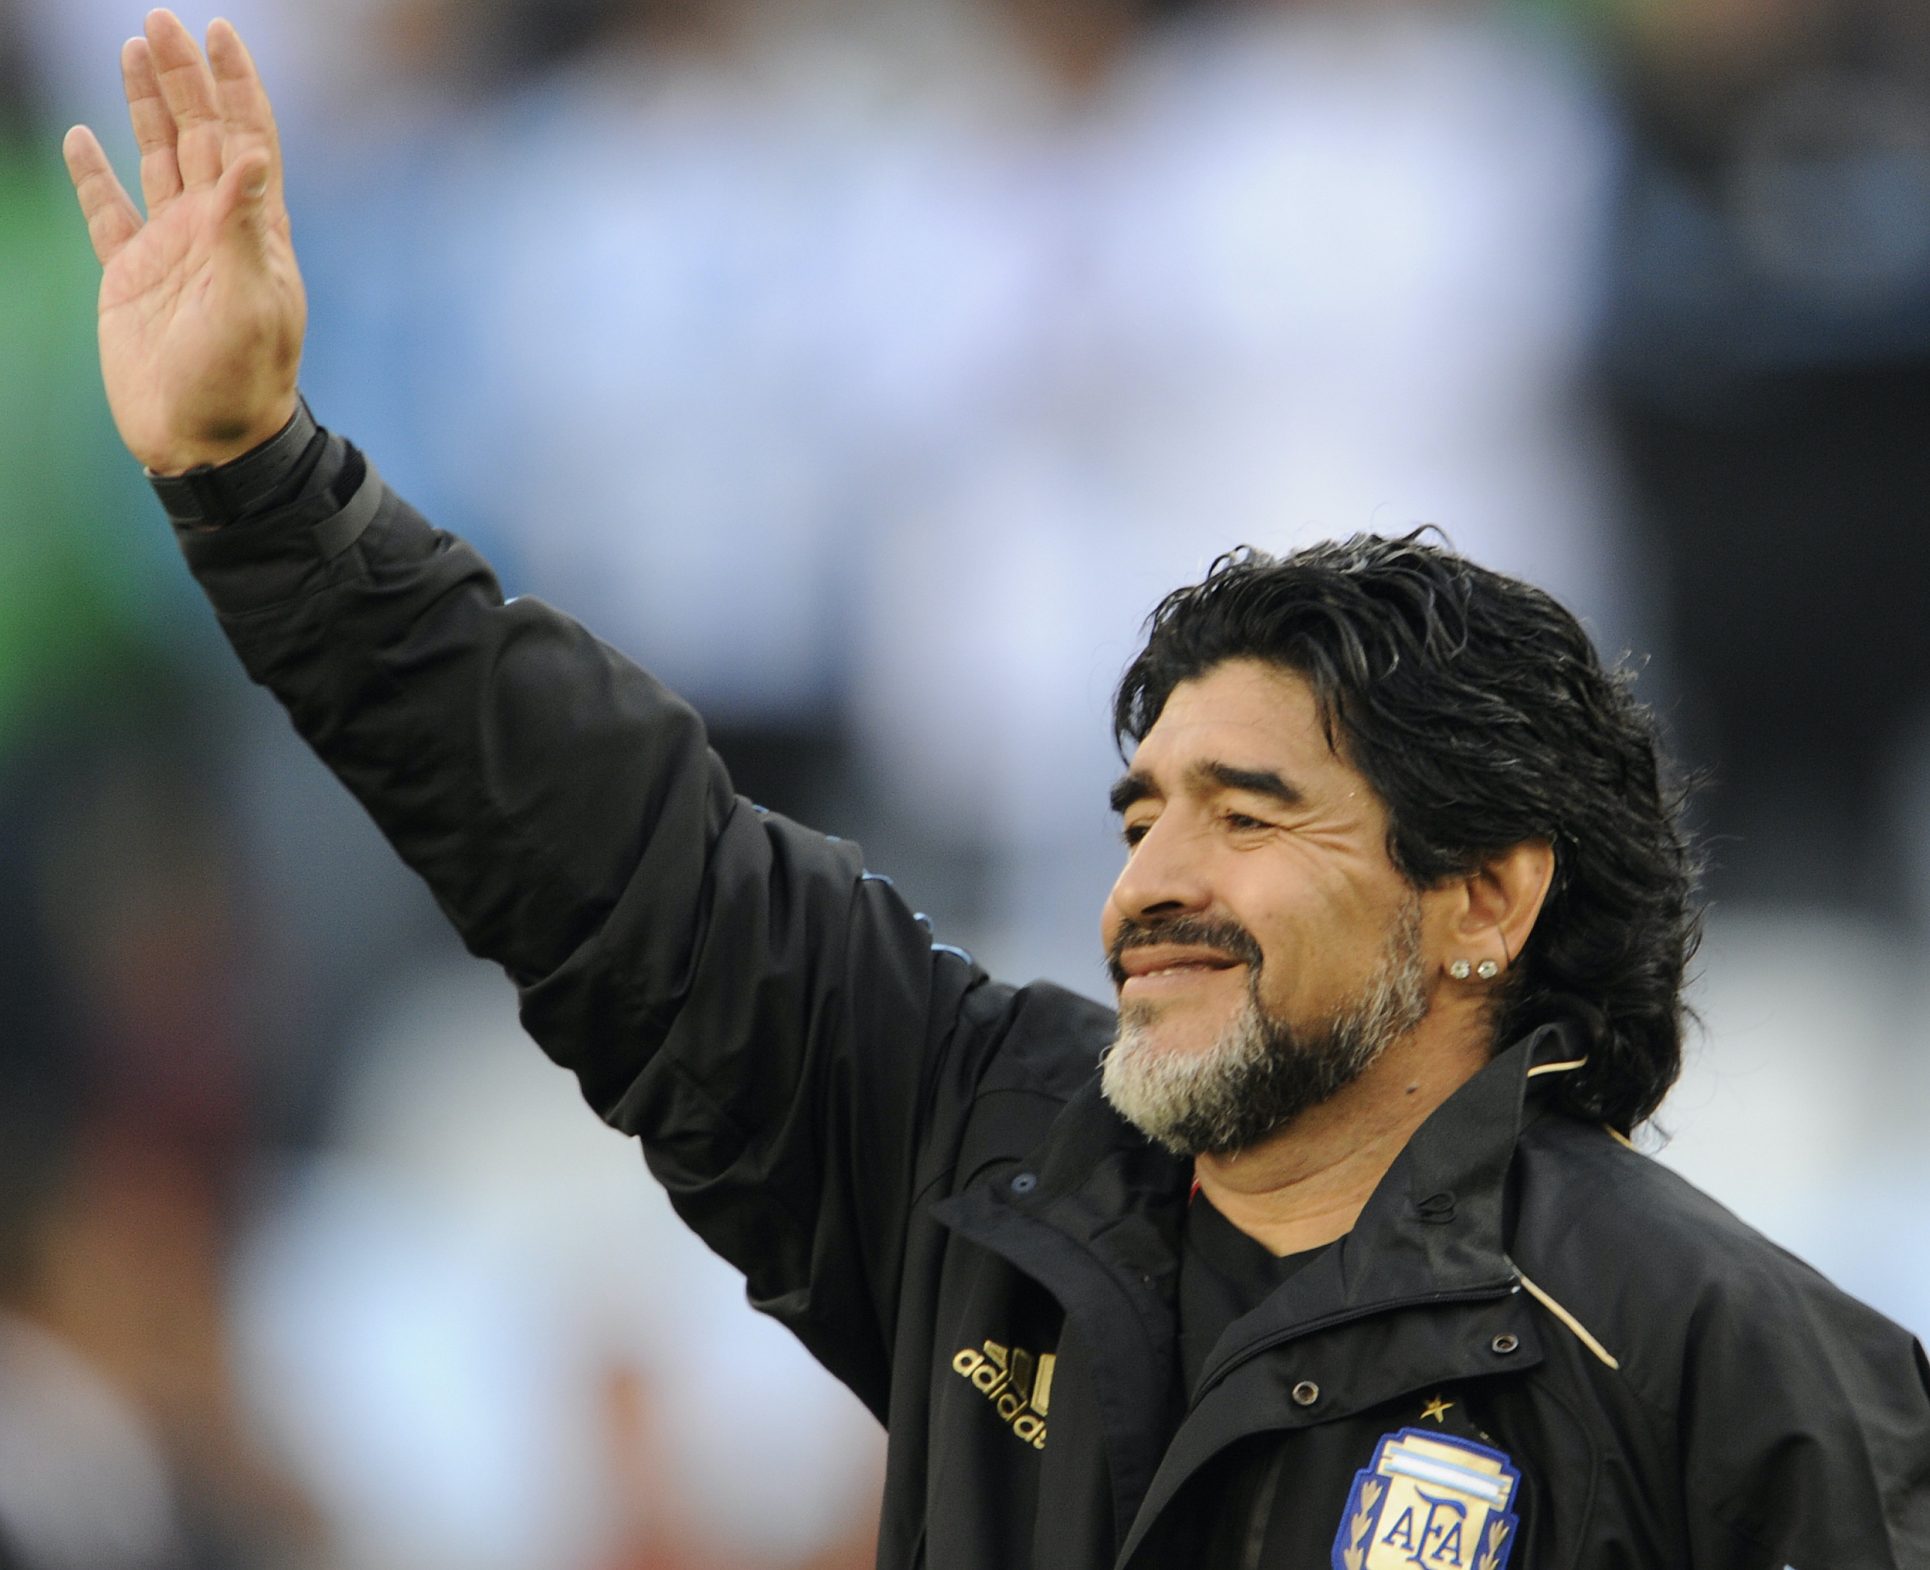 Así reporta la prensa mundial la muerte de Maradona